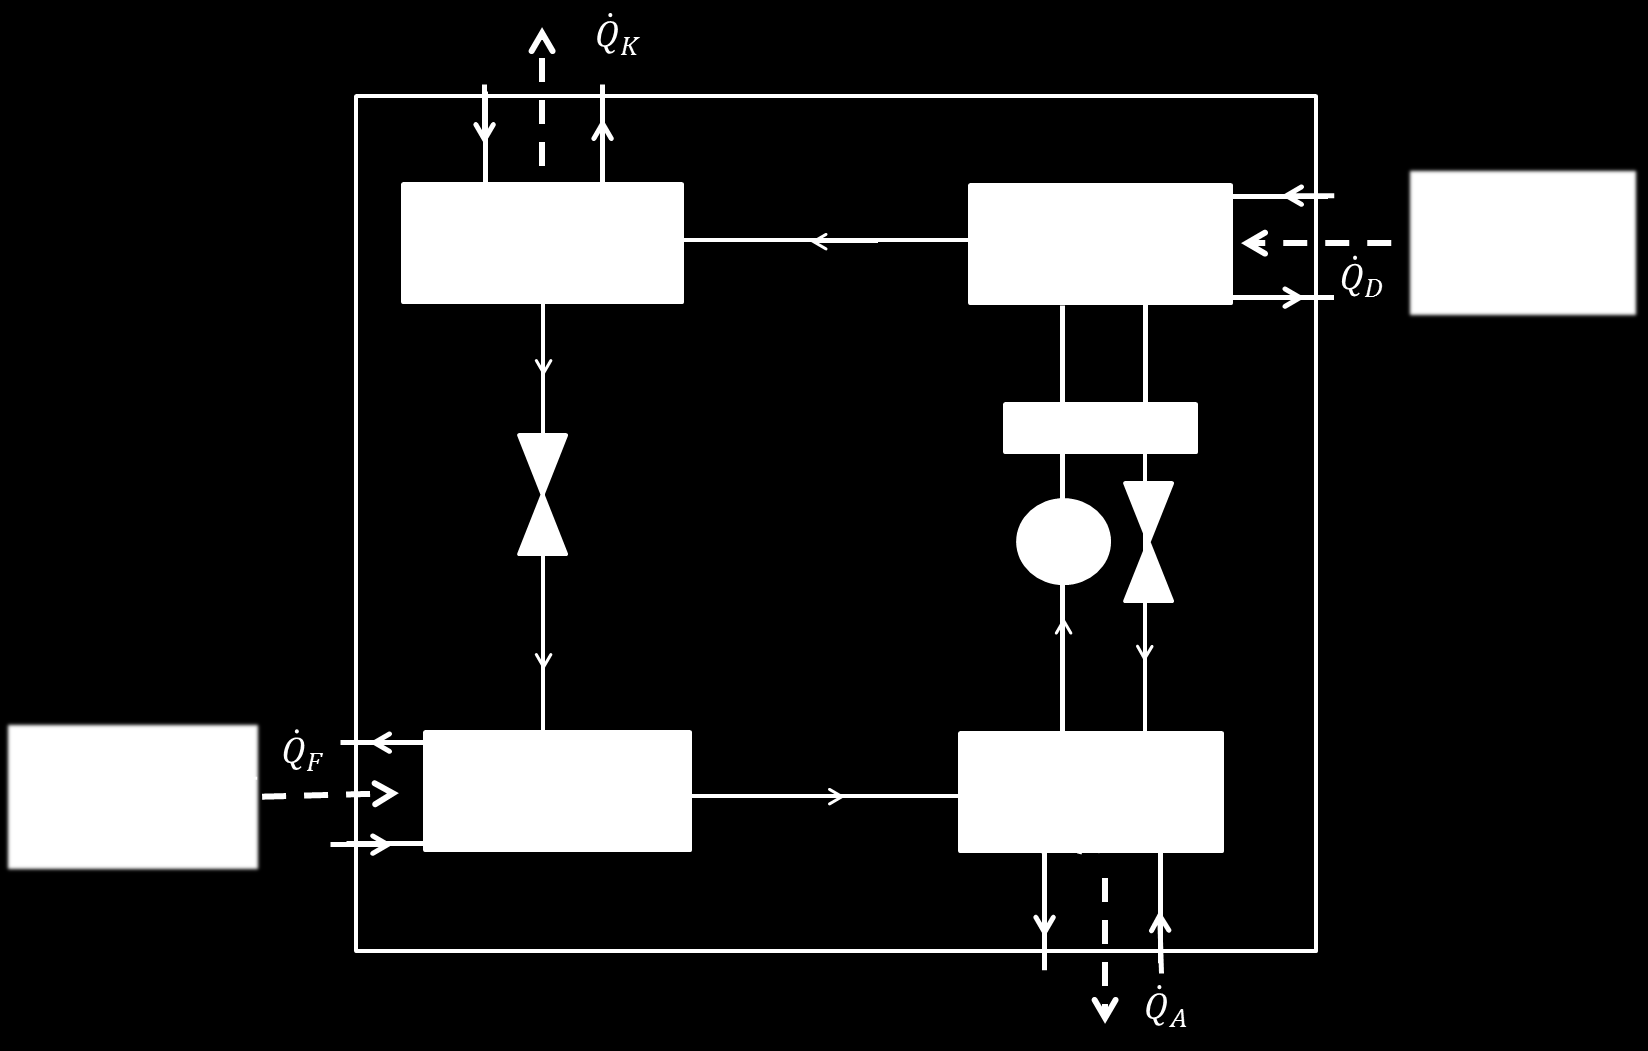 komponenter; förångare, absorbator, desorbator och kondensor, se Figur 3-7. Av dessa arbetar kondensor och desorbator vid ett högt tryck och förångare och absorbator vid ett lågt. Figur 3-7. Principskiss över en absorptionsvärmepump.